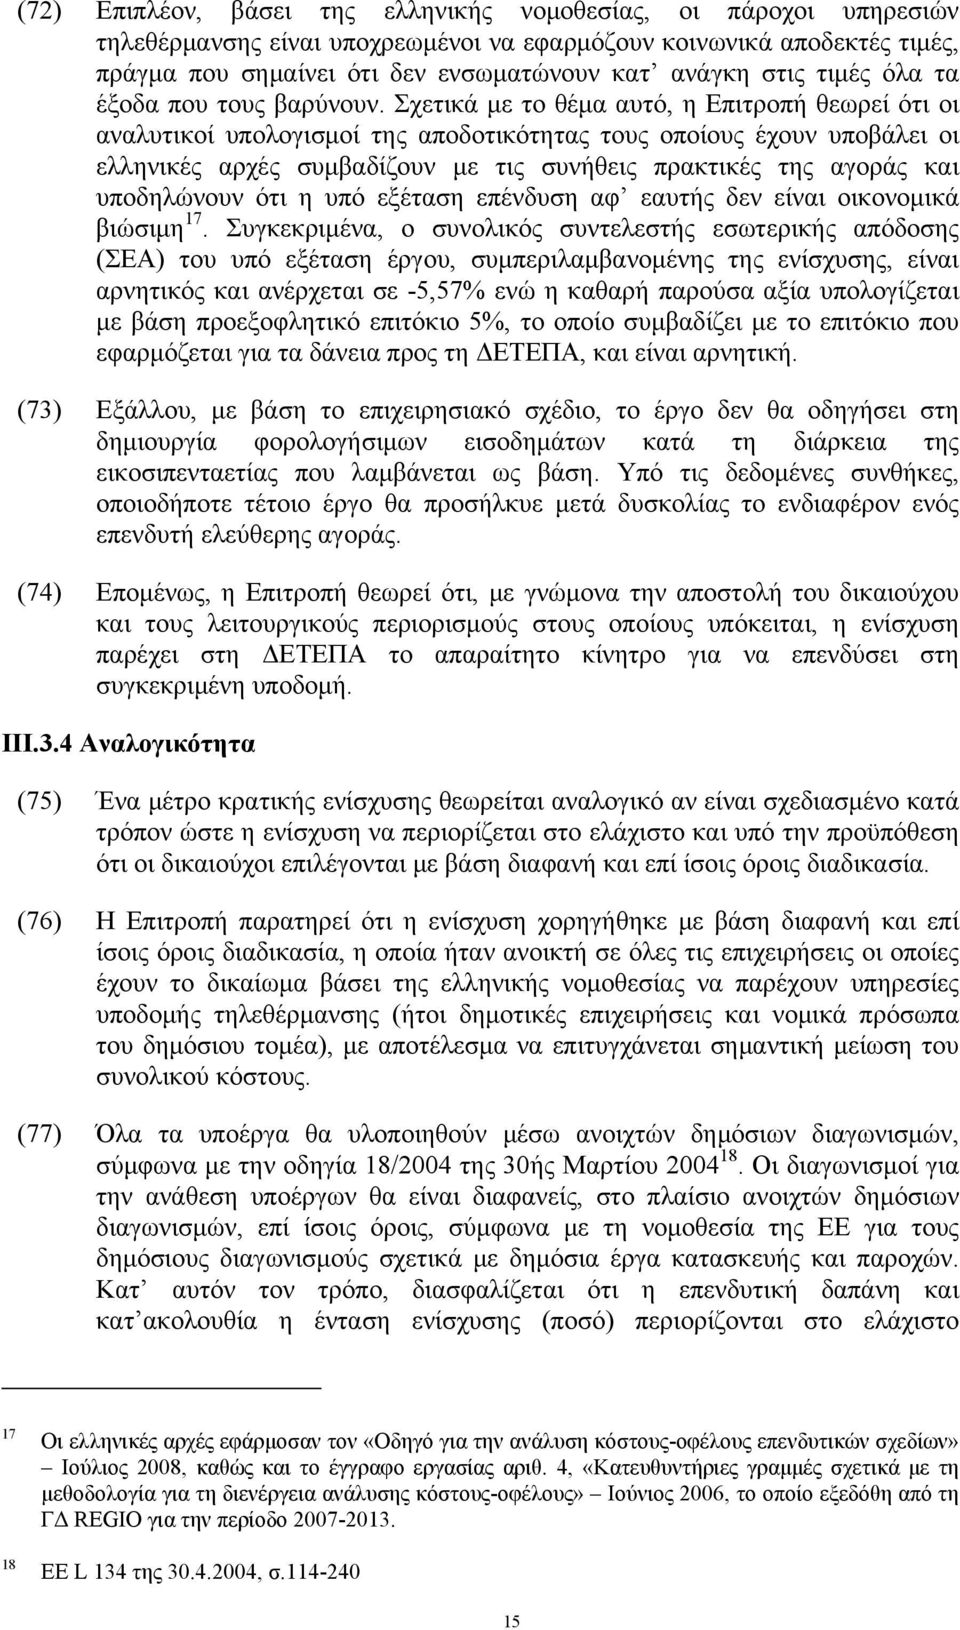 Σχετικά με το θέμα αυτό, η Επιτροπή θεωρεί ότι οι αναλυτικοί υπολογισμοί της αποδοτικότητας τους οποίους έχουν υποβάλει οι ελληνικές αρχές συμβαδίζουν με τις συνήθεις πρακτικές της αγοράς και